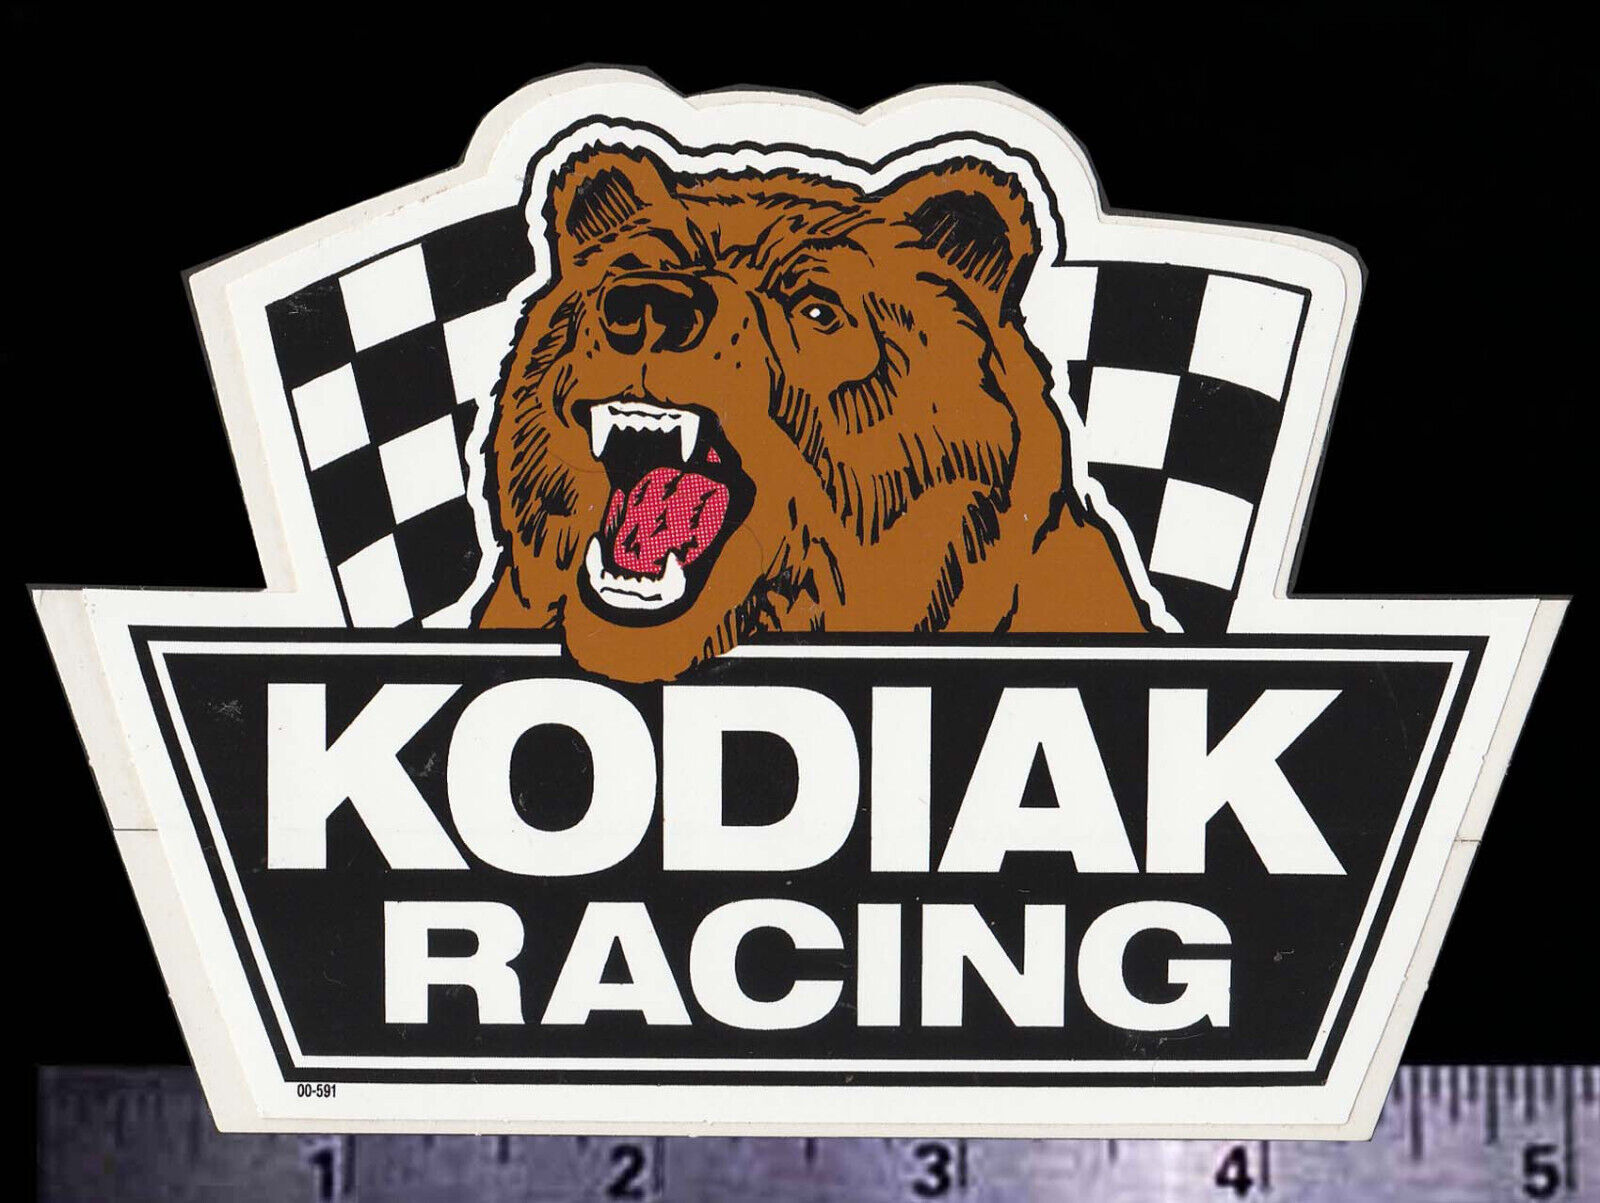 KODIAK Racing - Original Vintage 80’s Racing Decal/Sticker NASCAR Rusty Wallace